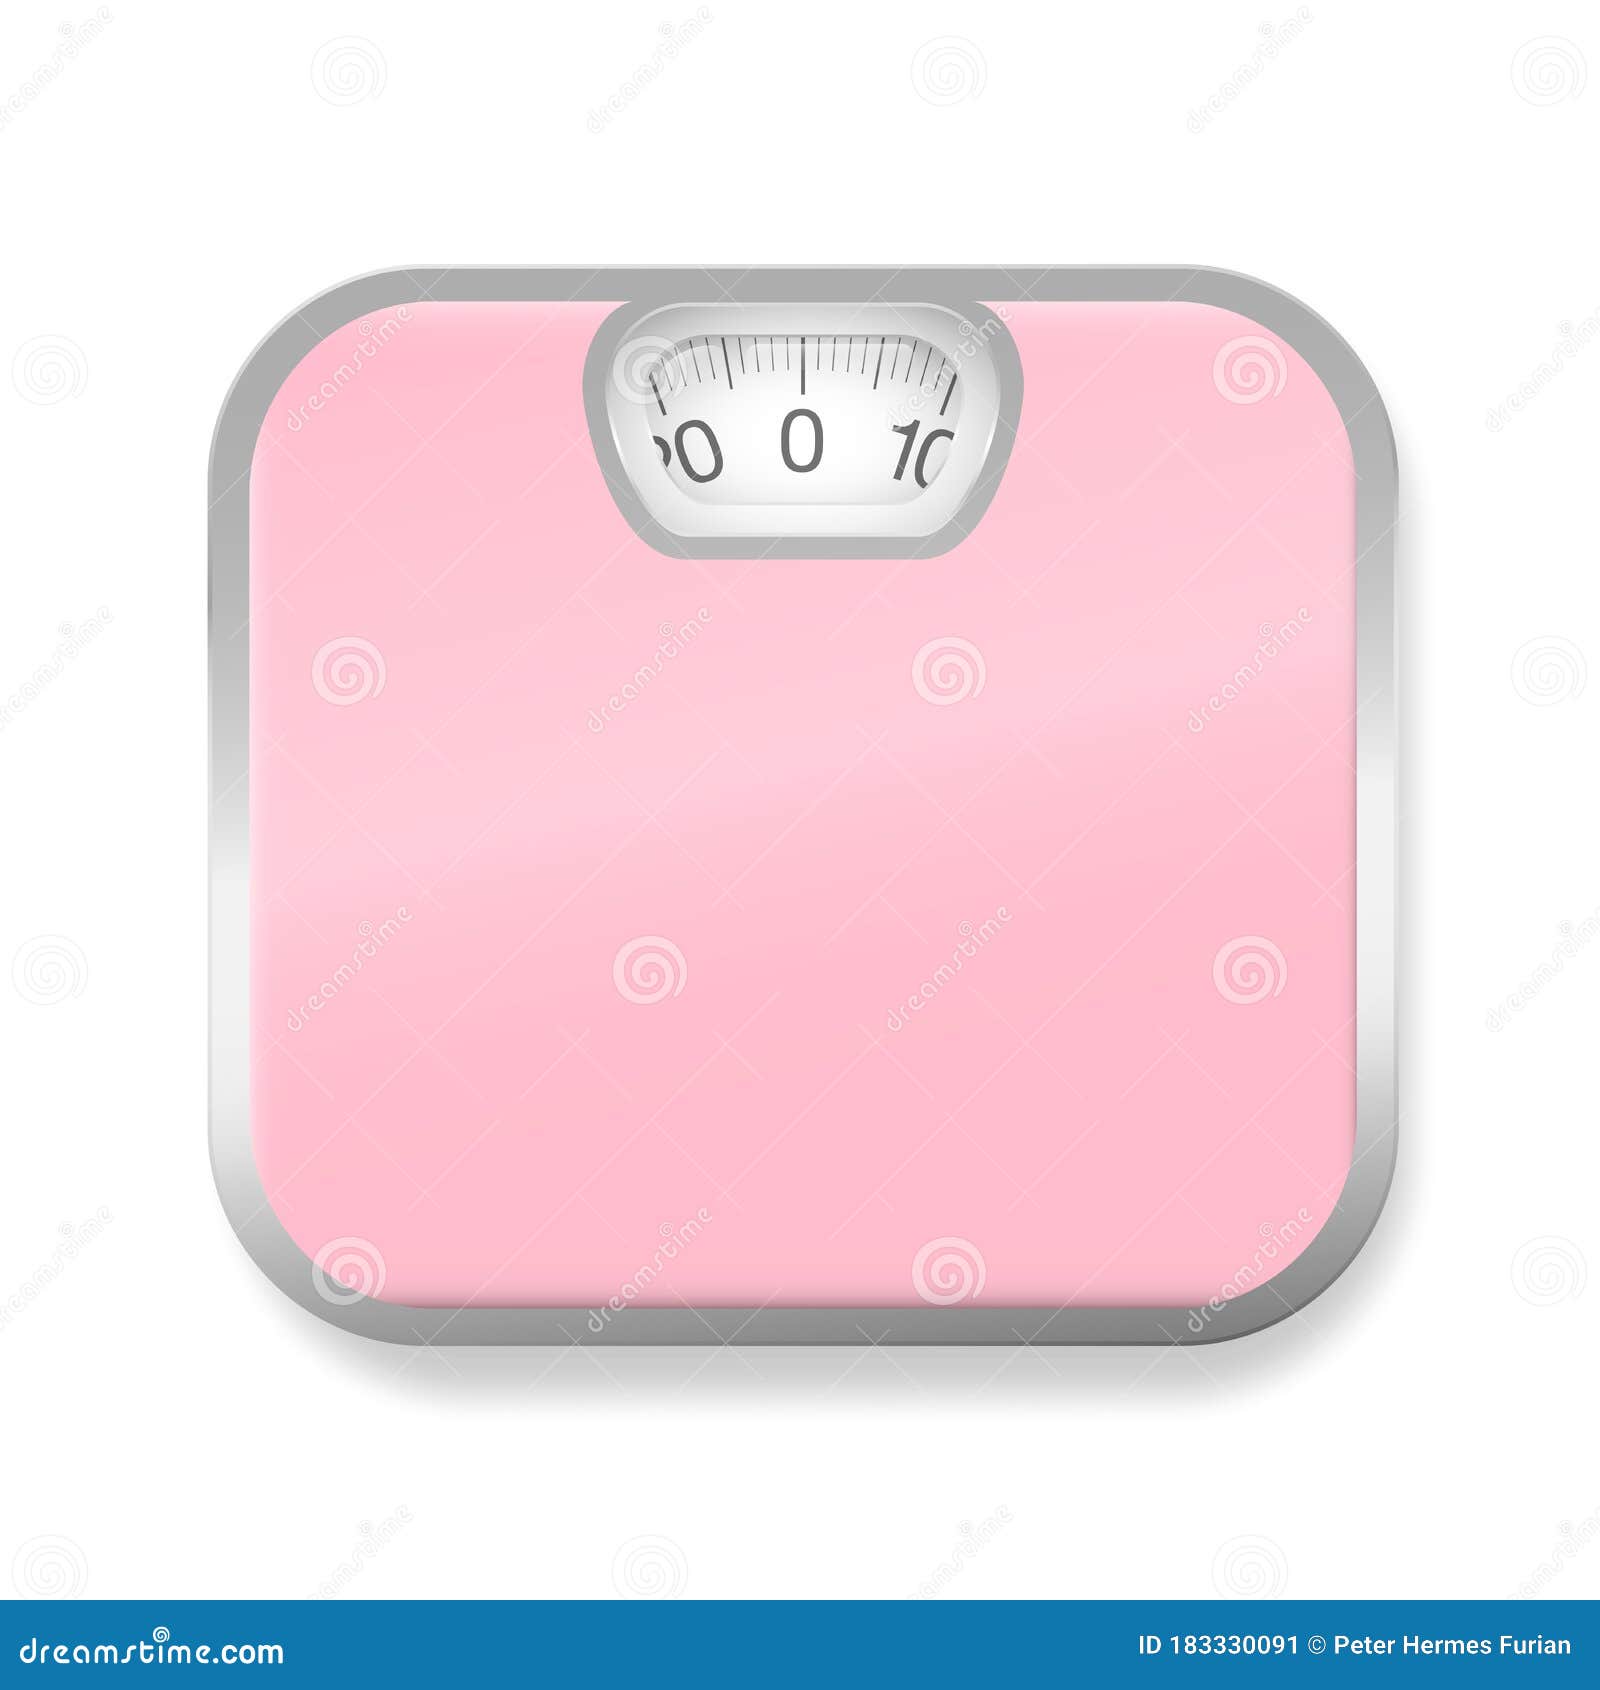 https://thumbs.dreamstime.com/z/bathroom-scales-pink-personal-183330091.jpg